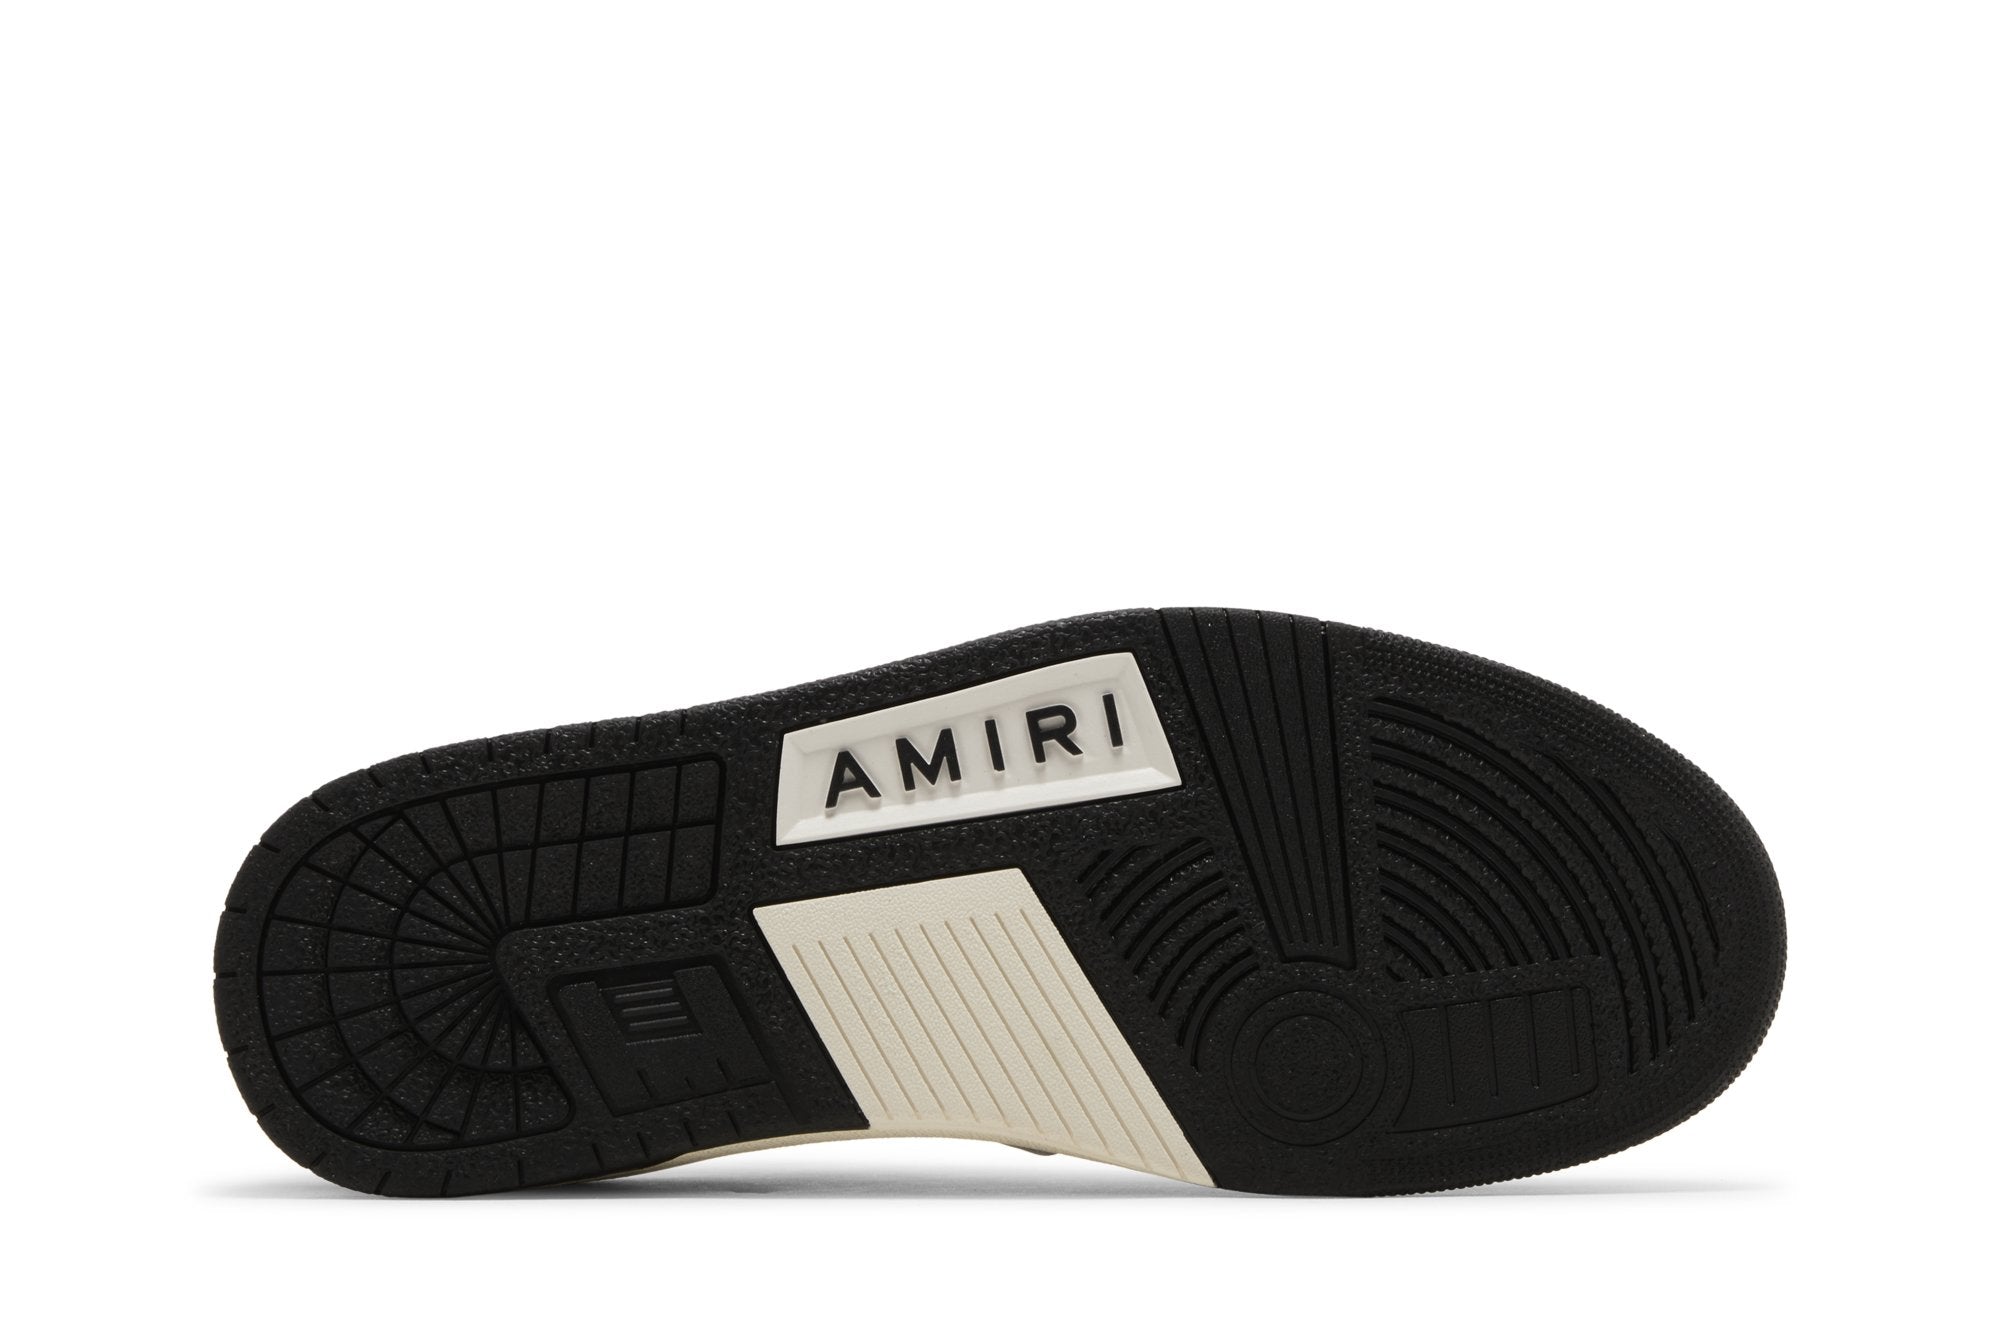 Amiri Skel Top Low - Black White ()